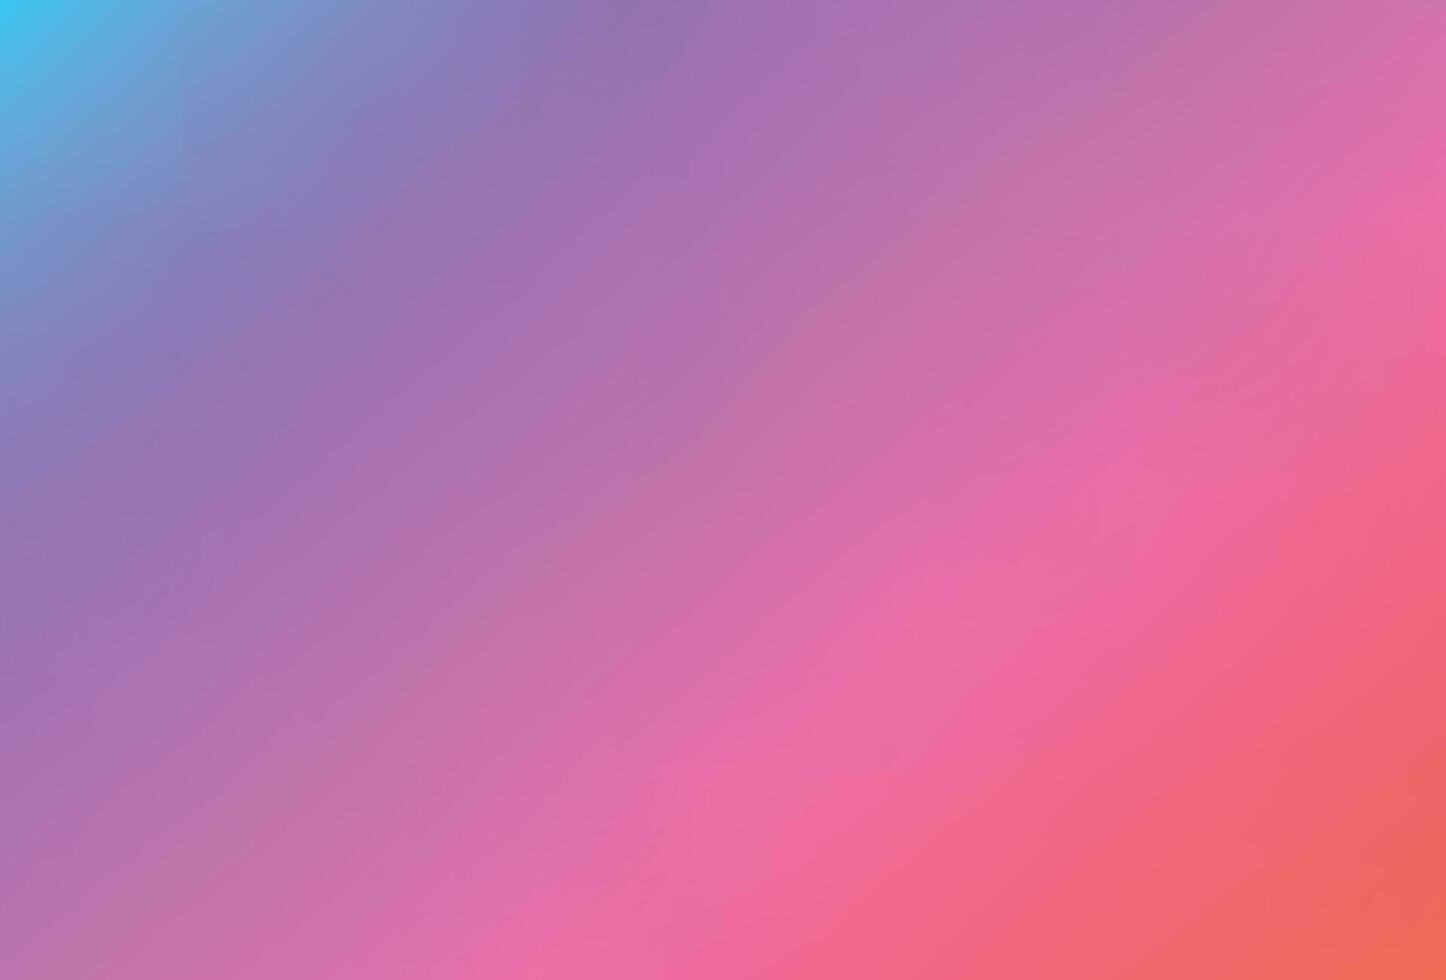 fond de filet dégradé coloré lisse et flou. couleurs arc-en-ciel lumineuses modernes. modèle de bannière de vecteur de couleur douce modifiable facile